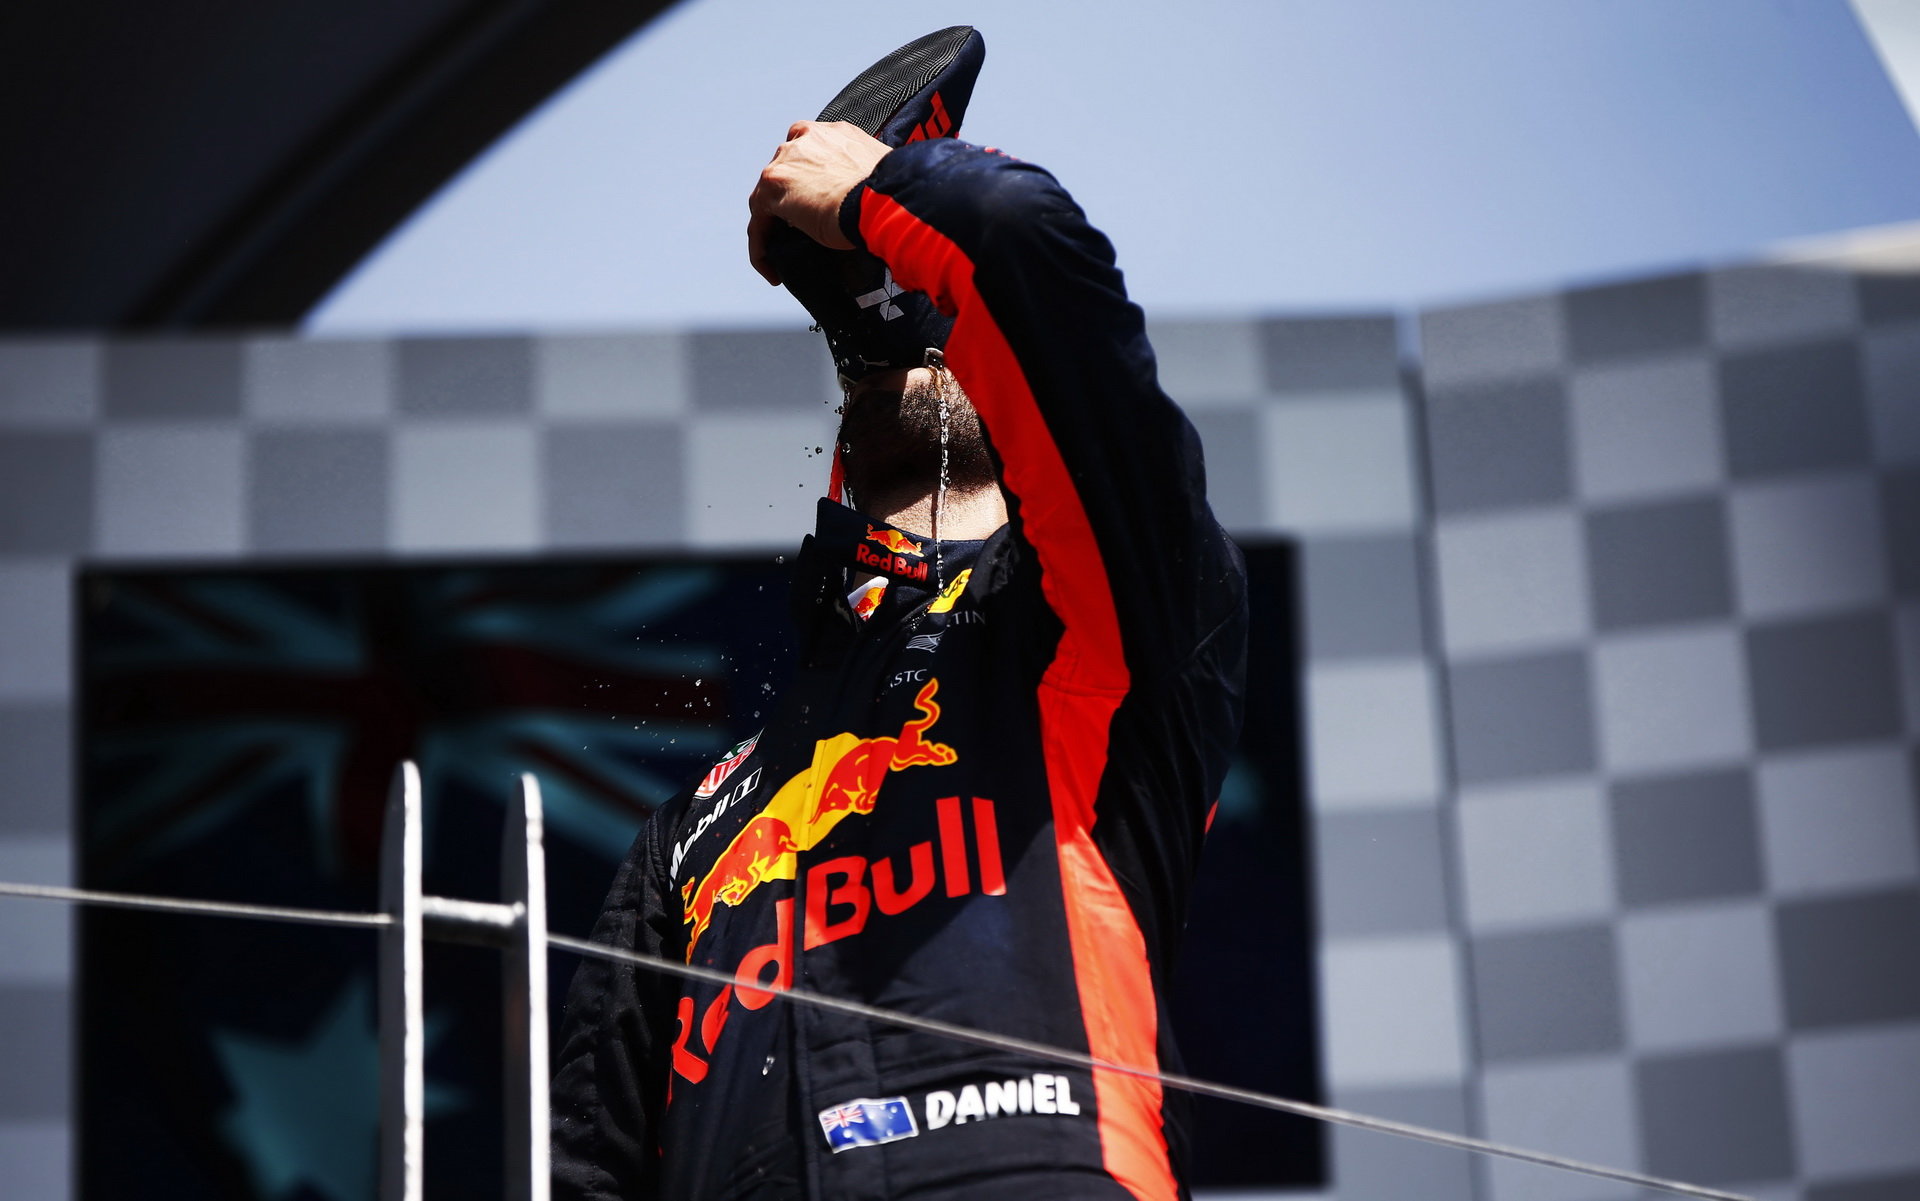 Daniel Ricciardo si užívá svou "shoey" na pódiu po závodě v Kanadě